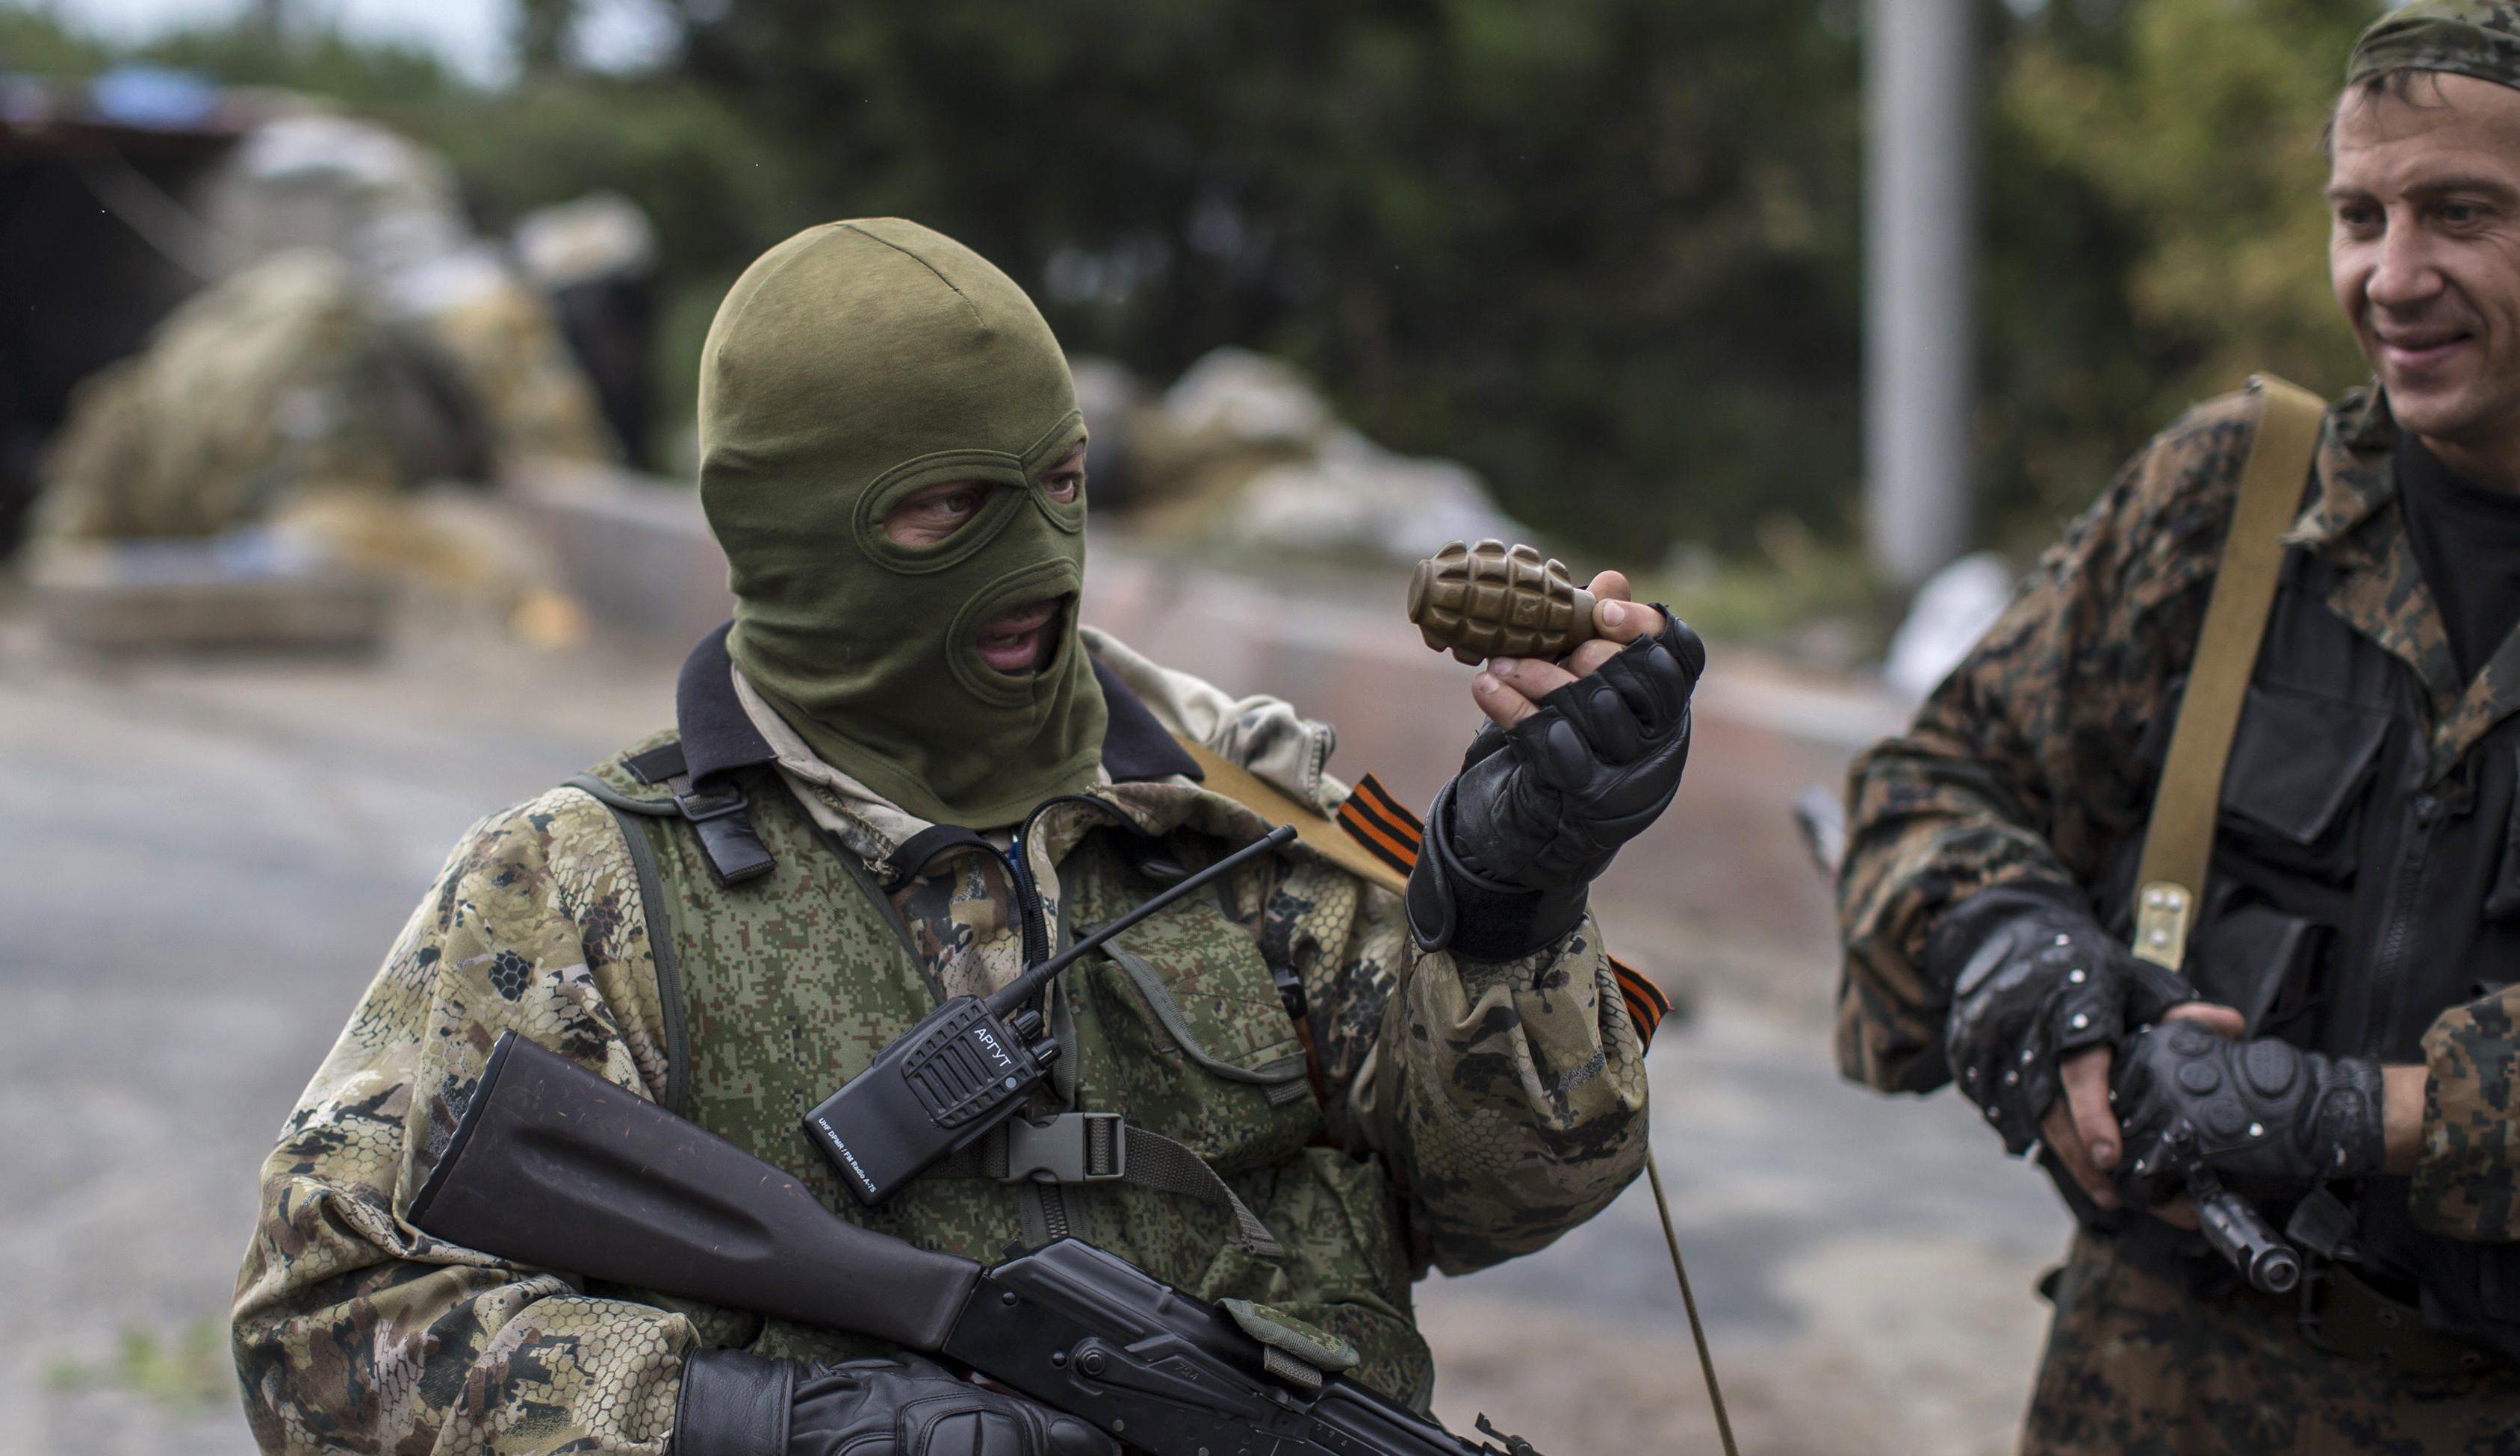 Бои гремят вдоль всей линии фронта: боевики "Л/ДНР" накаляют обстановку на Донбассе, есть потери ВСУ